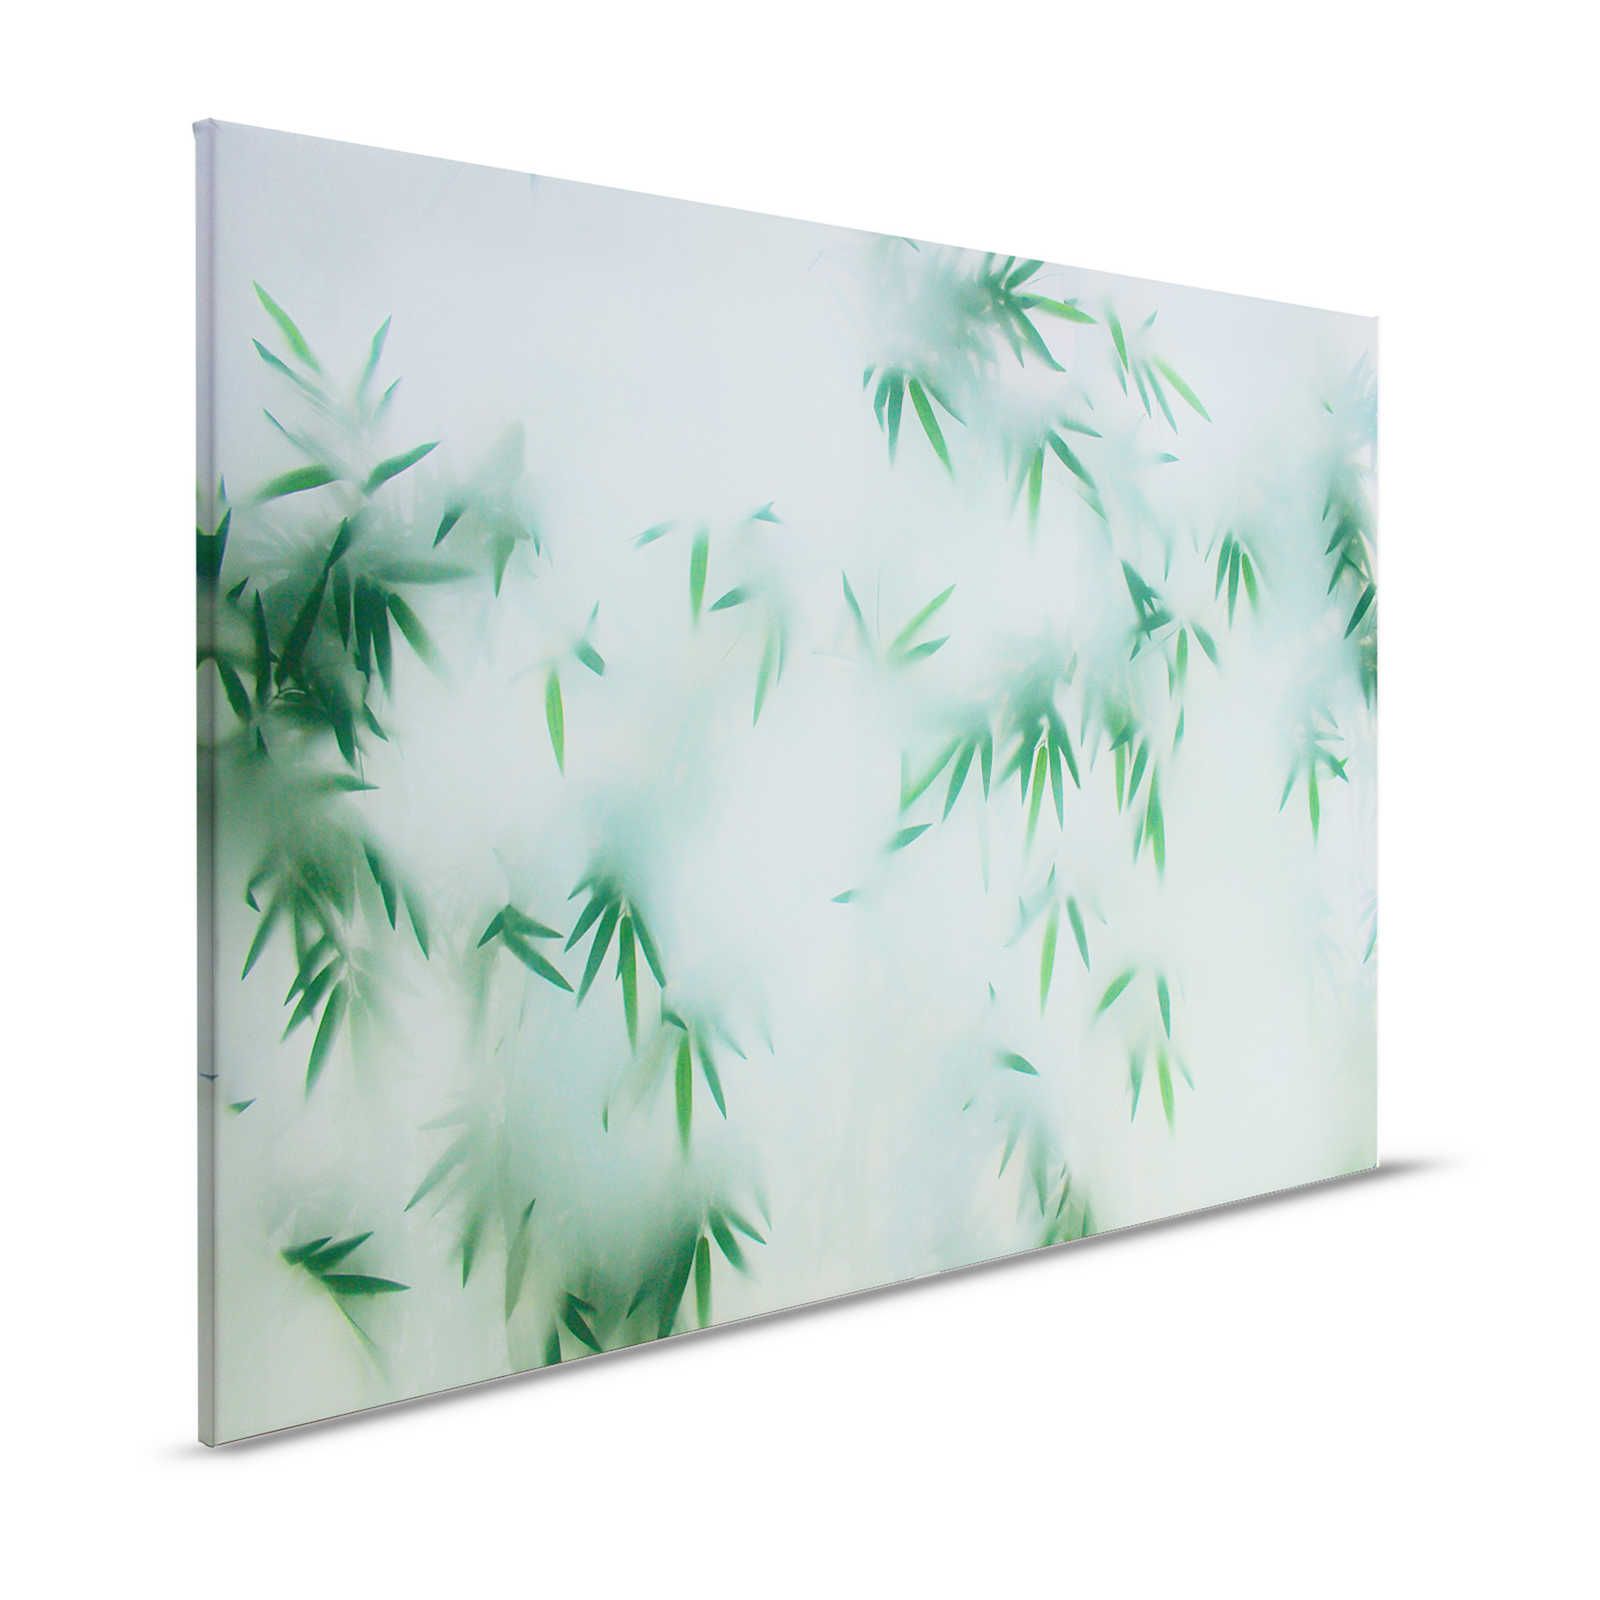 Panda Paradise 1 - Quadro su tela di bambù Foglie verdi nella nebbia - 1,20 m x 0,80 m
